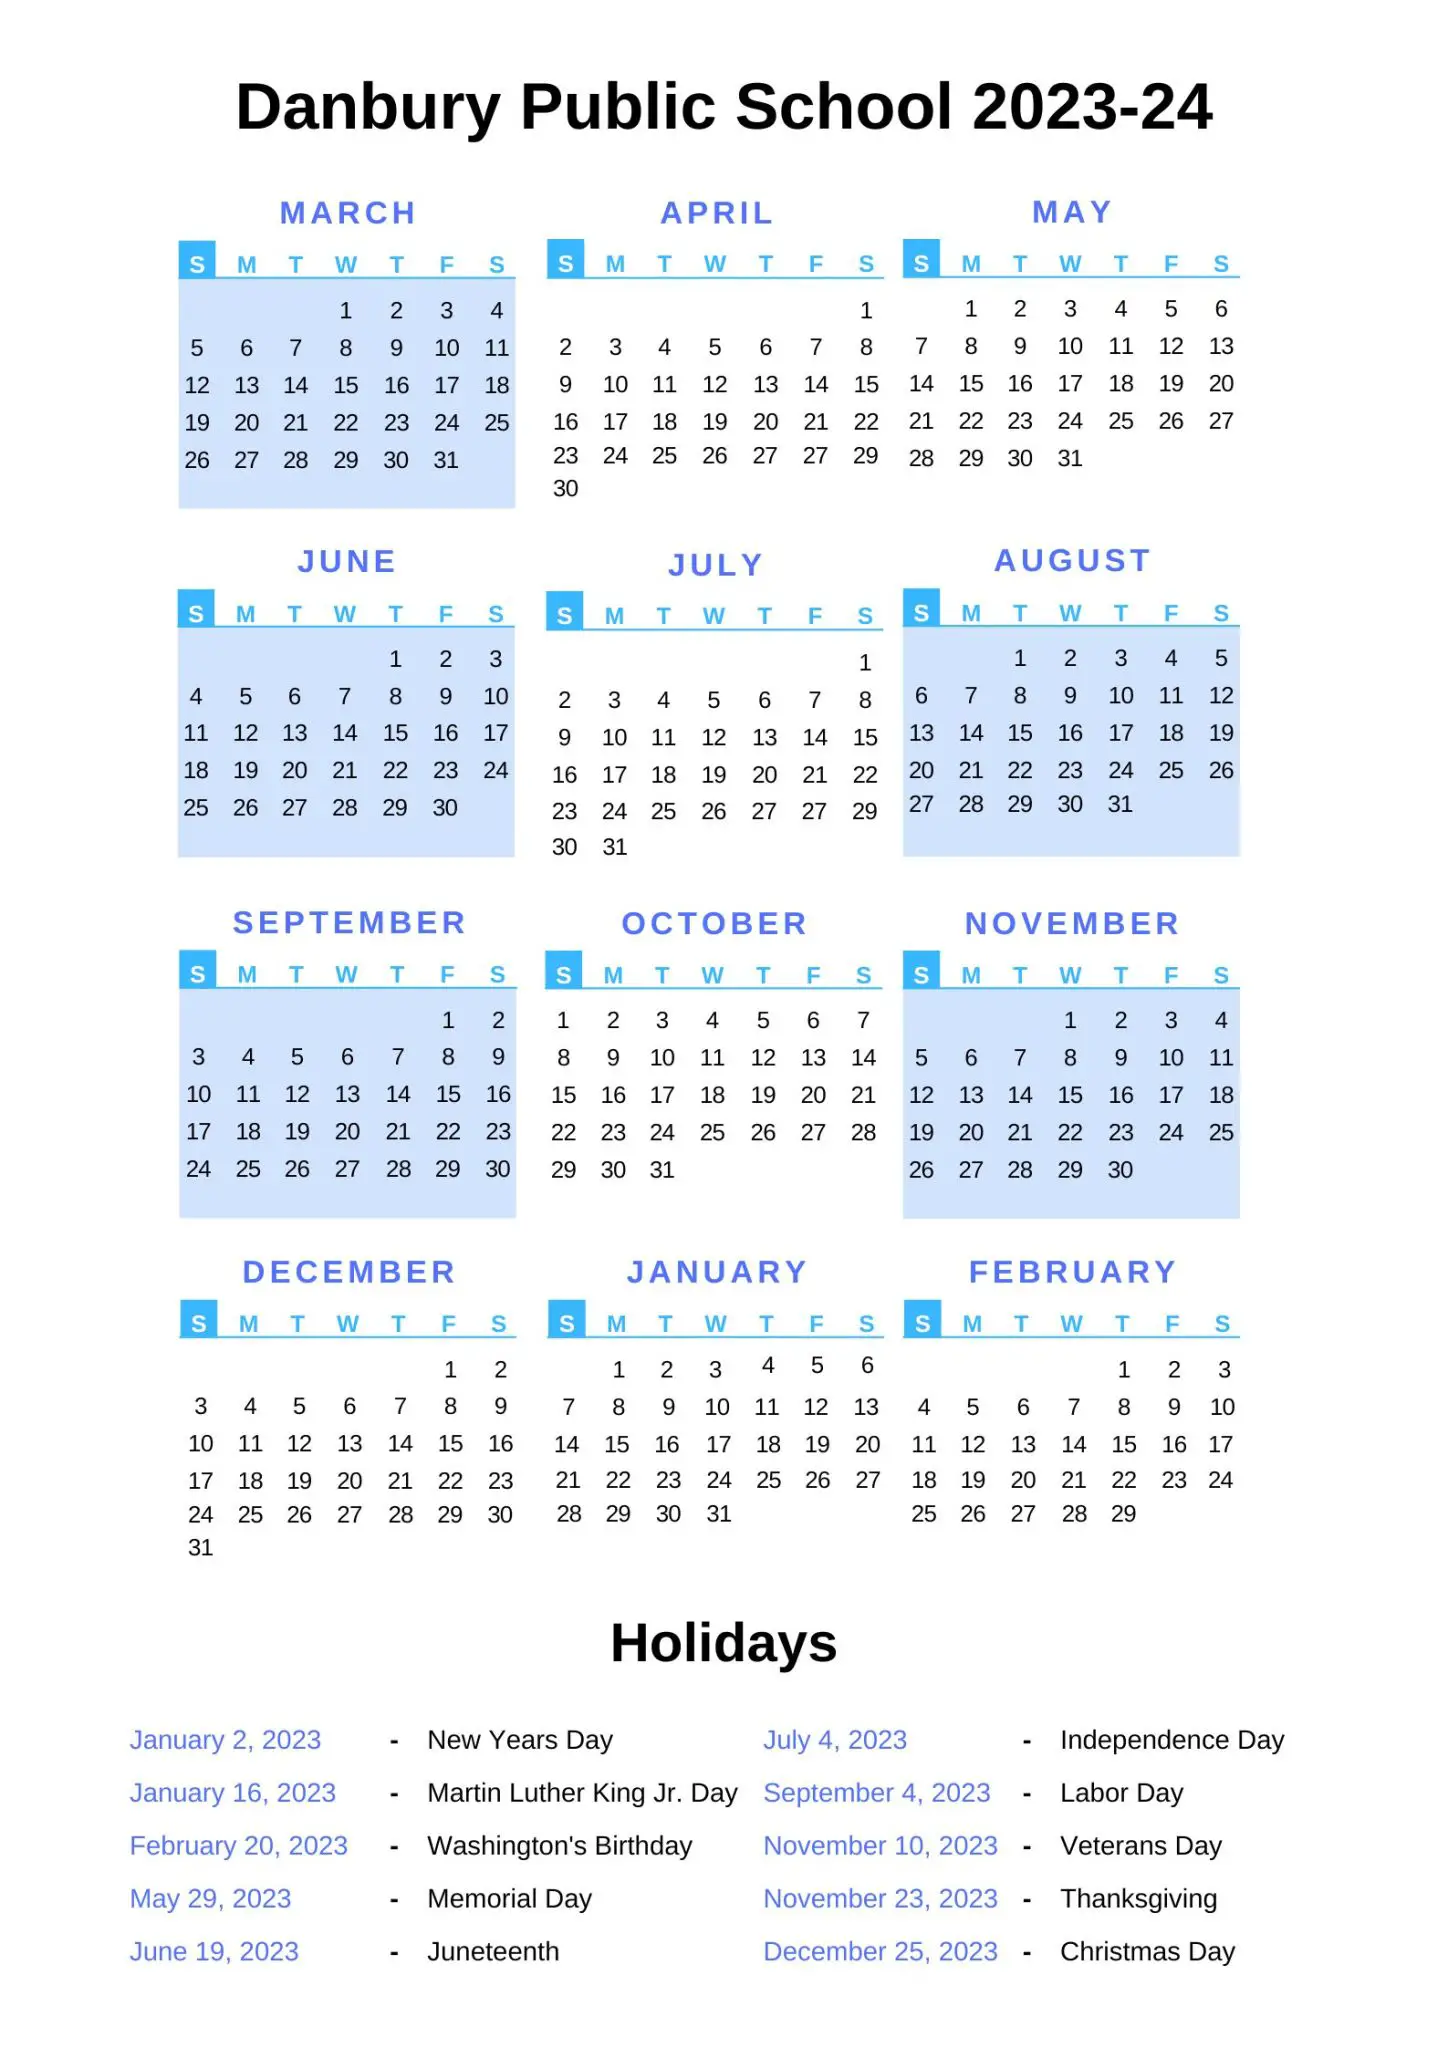 Danbury Public Schools Calendar DPS 2023 24 with Holidays